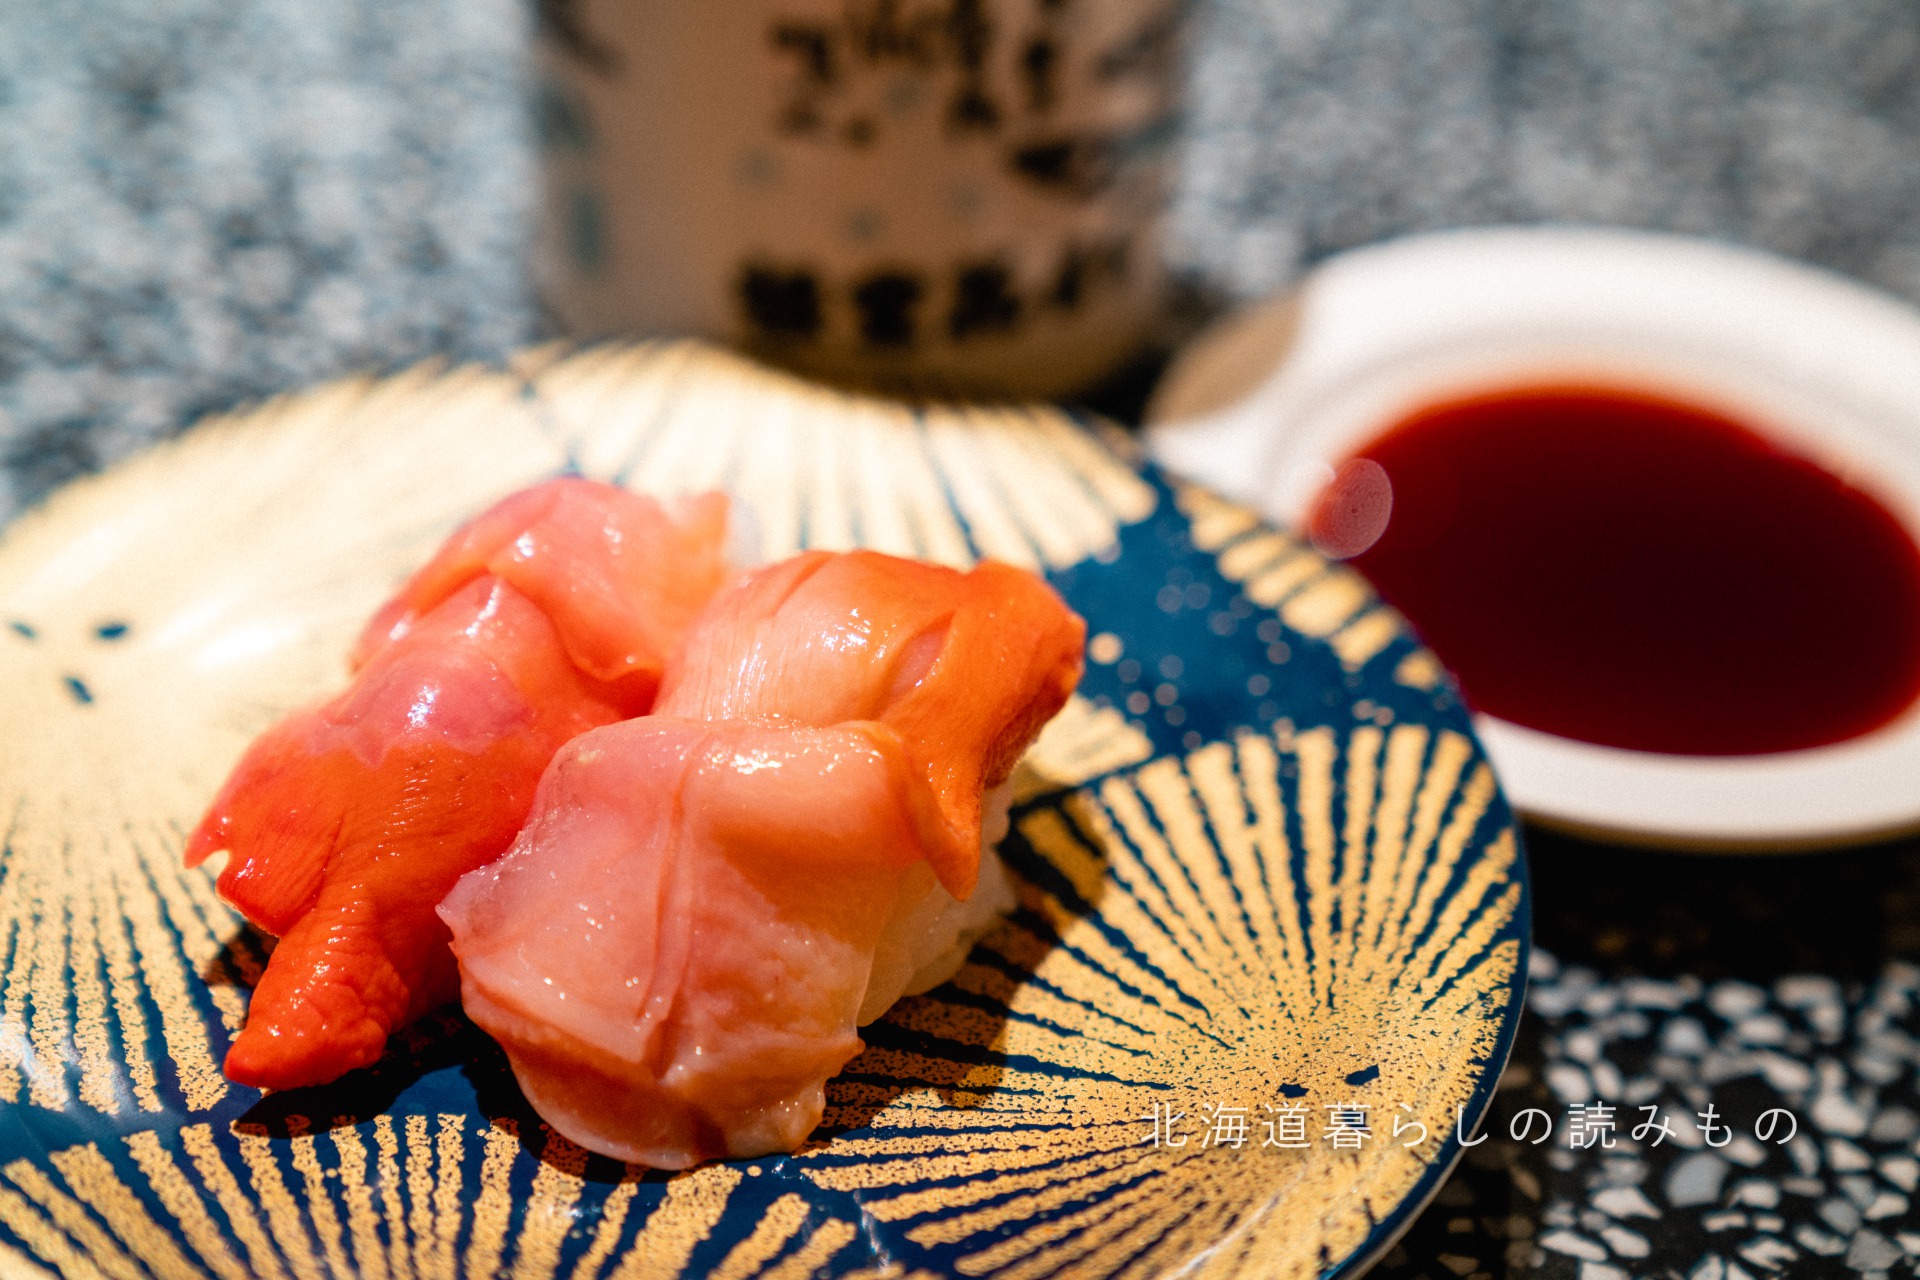 回転寿司 根室花まるのメニュー「赤貝」の写真